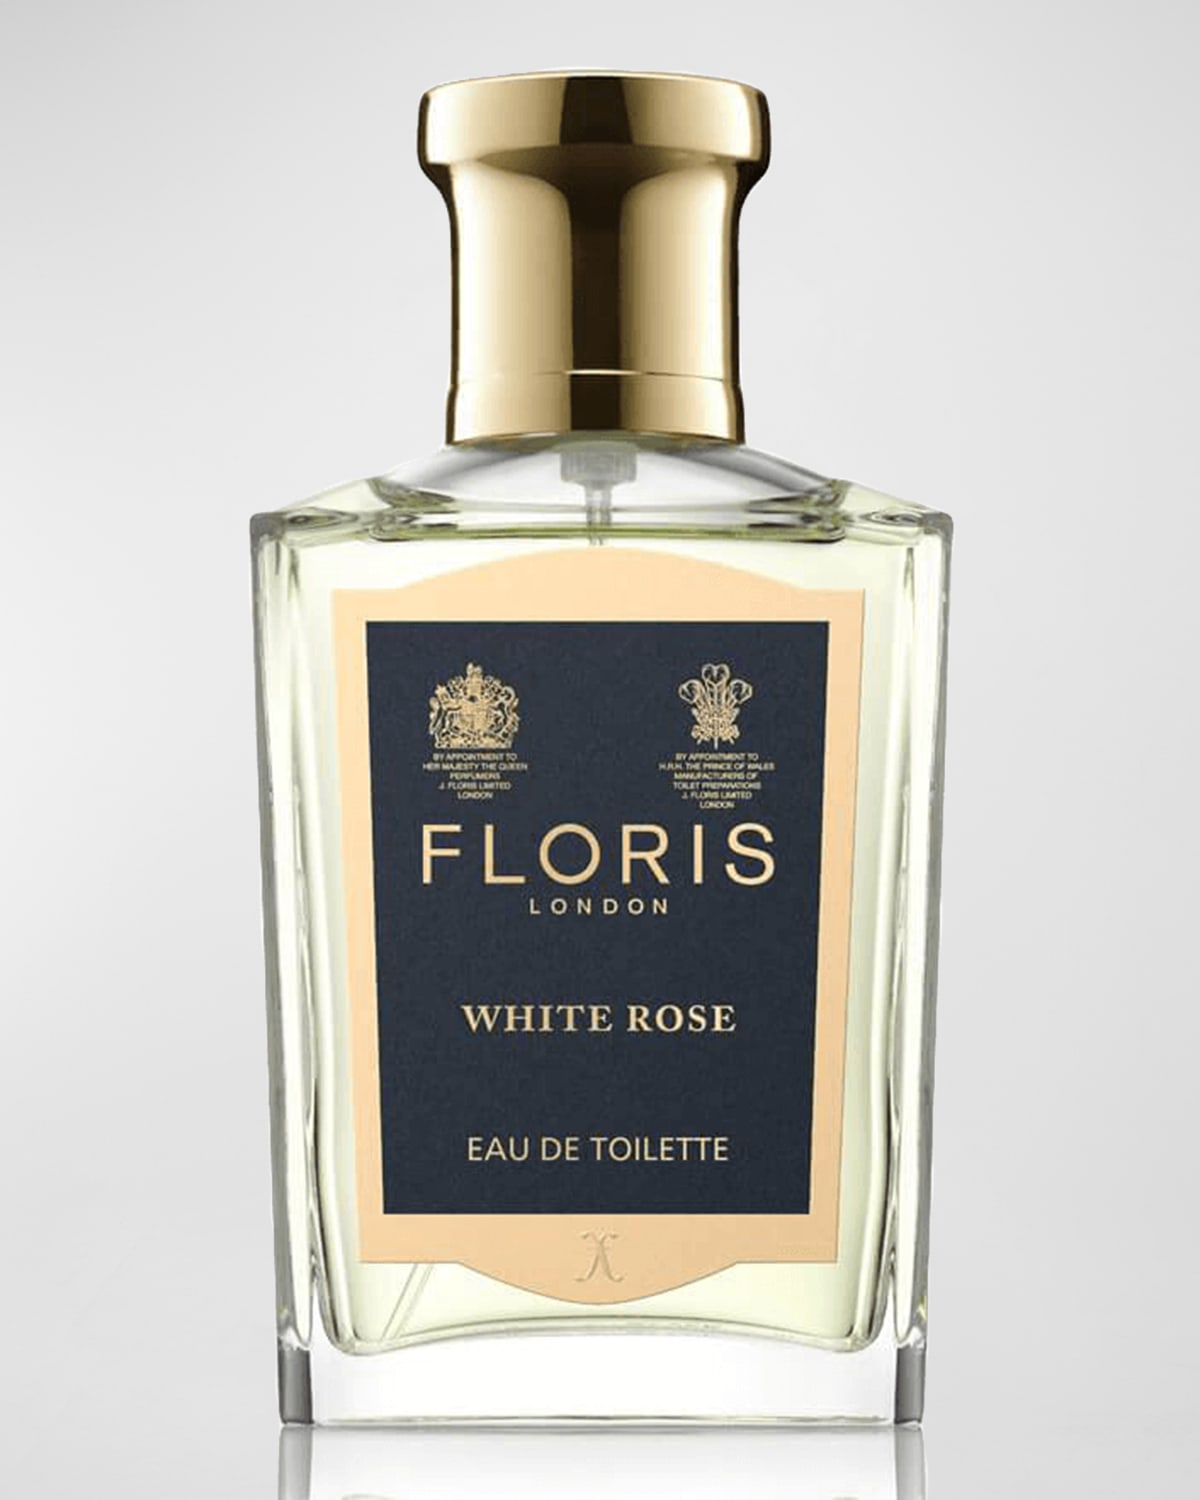 Floris London White Rose Eau de Toilette, 1.7 oz.